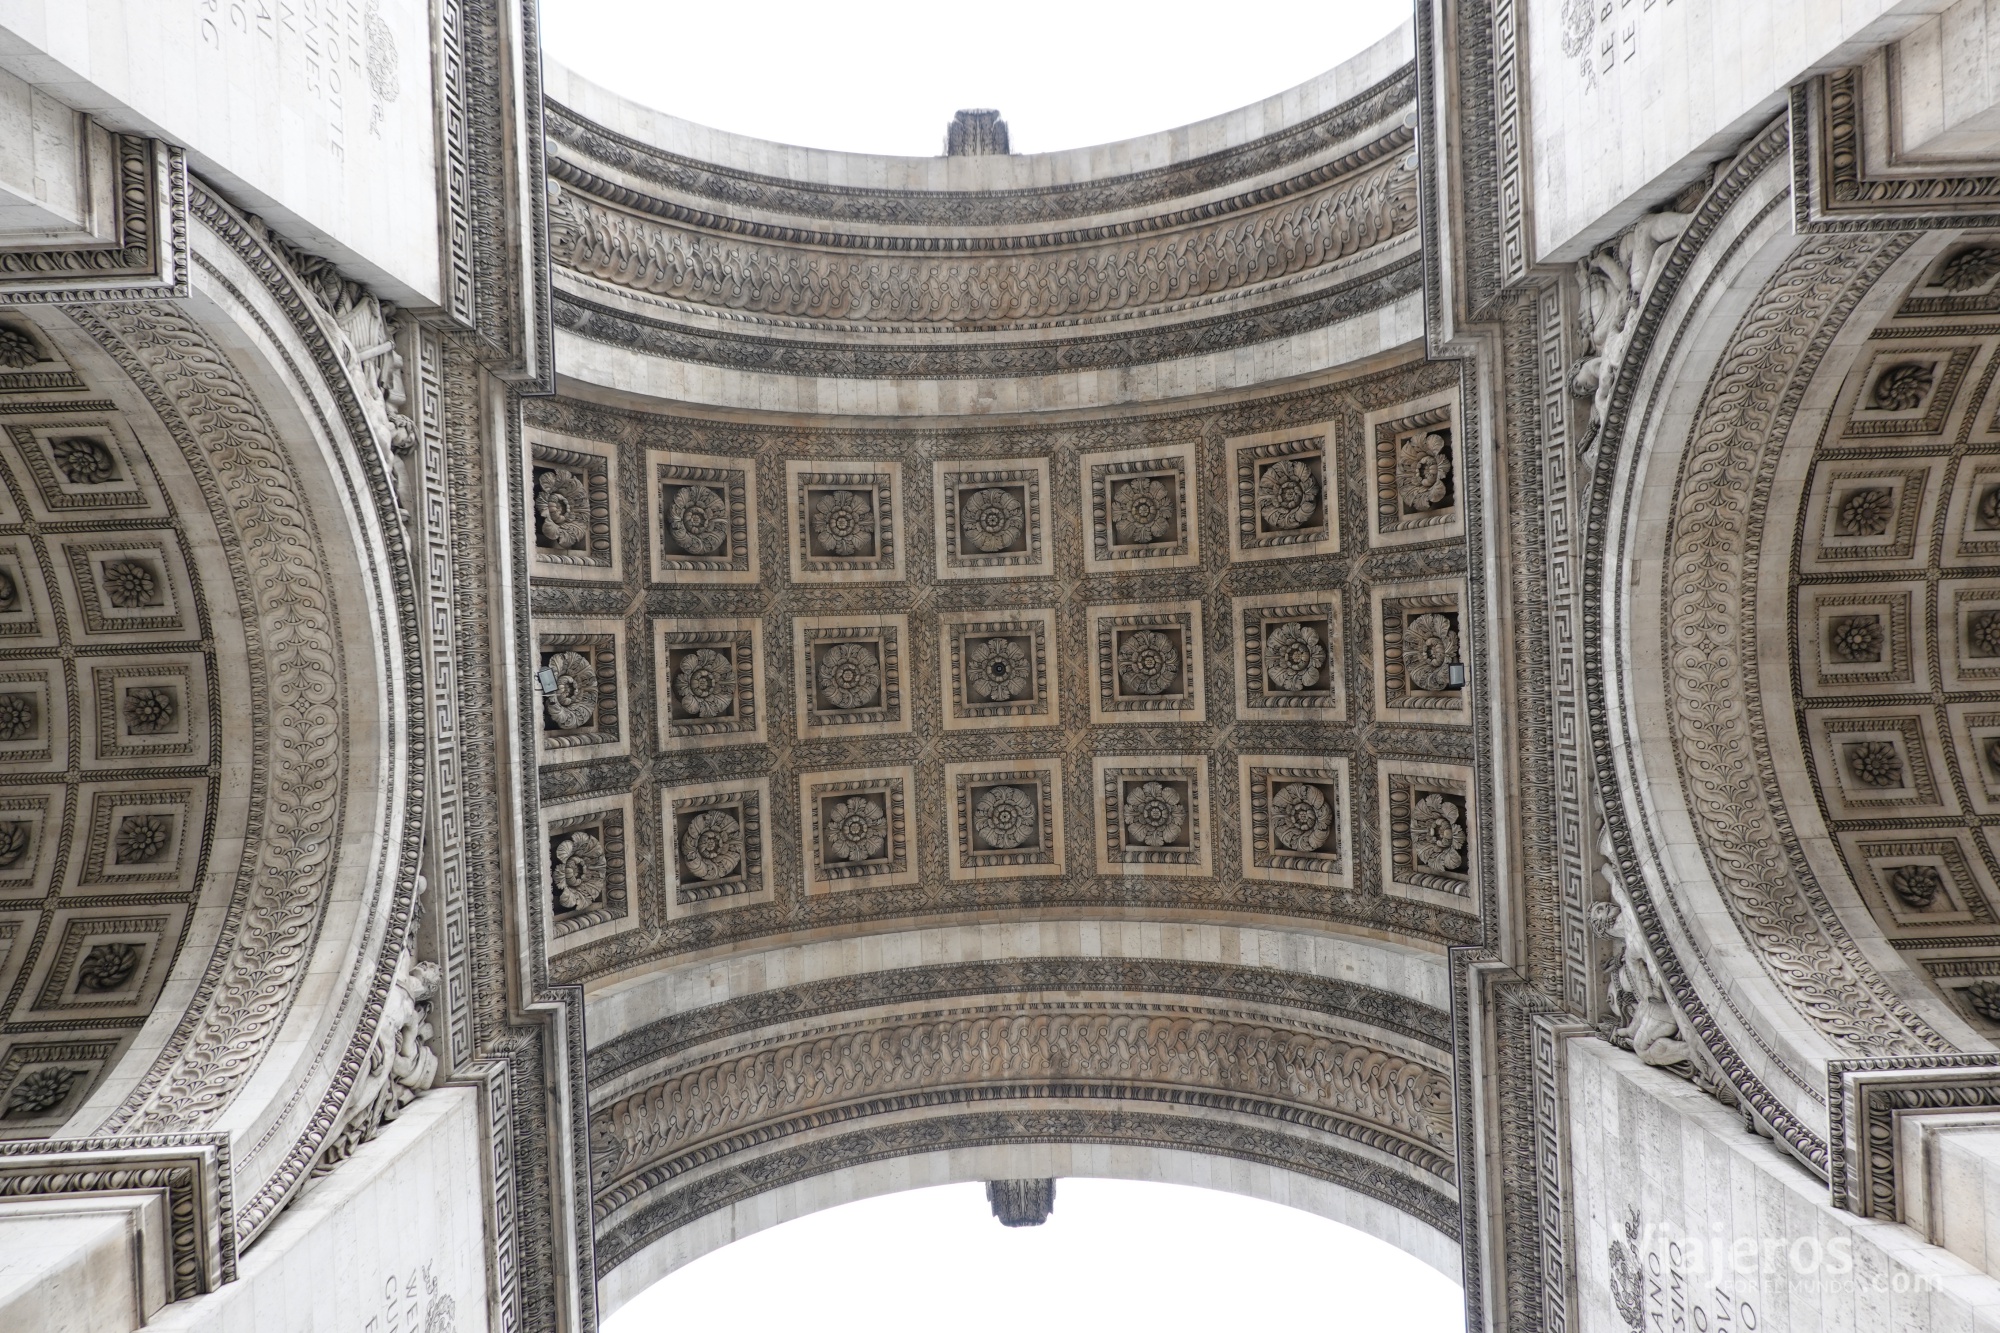 Arco del Triunfo - París